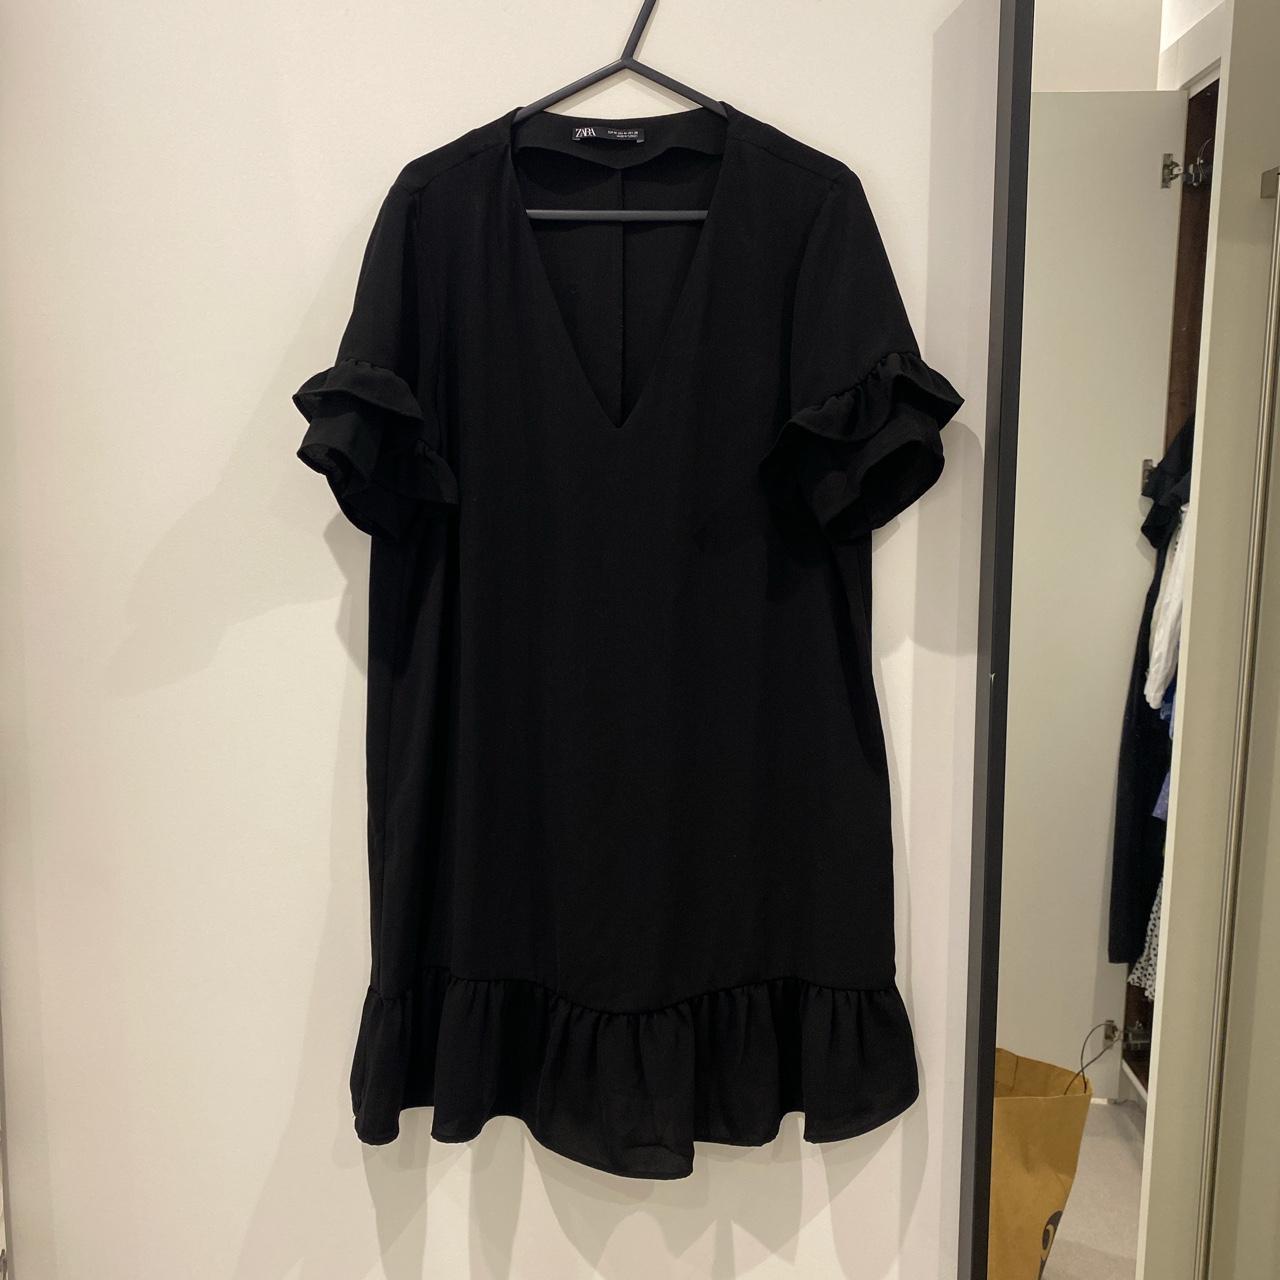 Zara A-line black dress Knee length with frill... - Depop